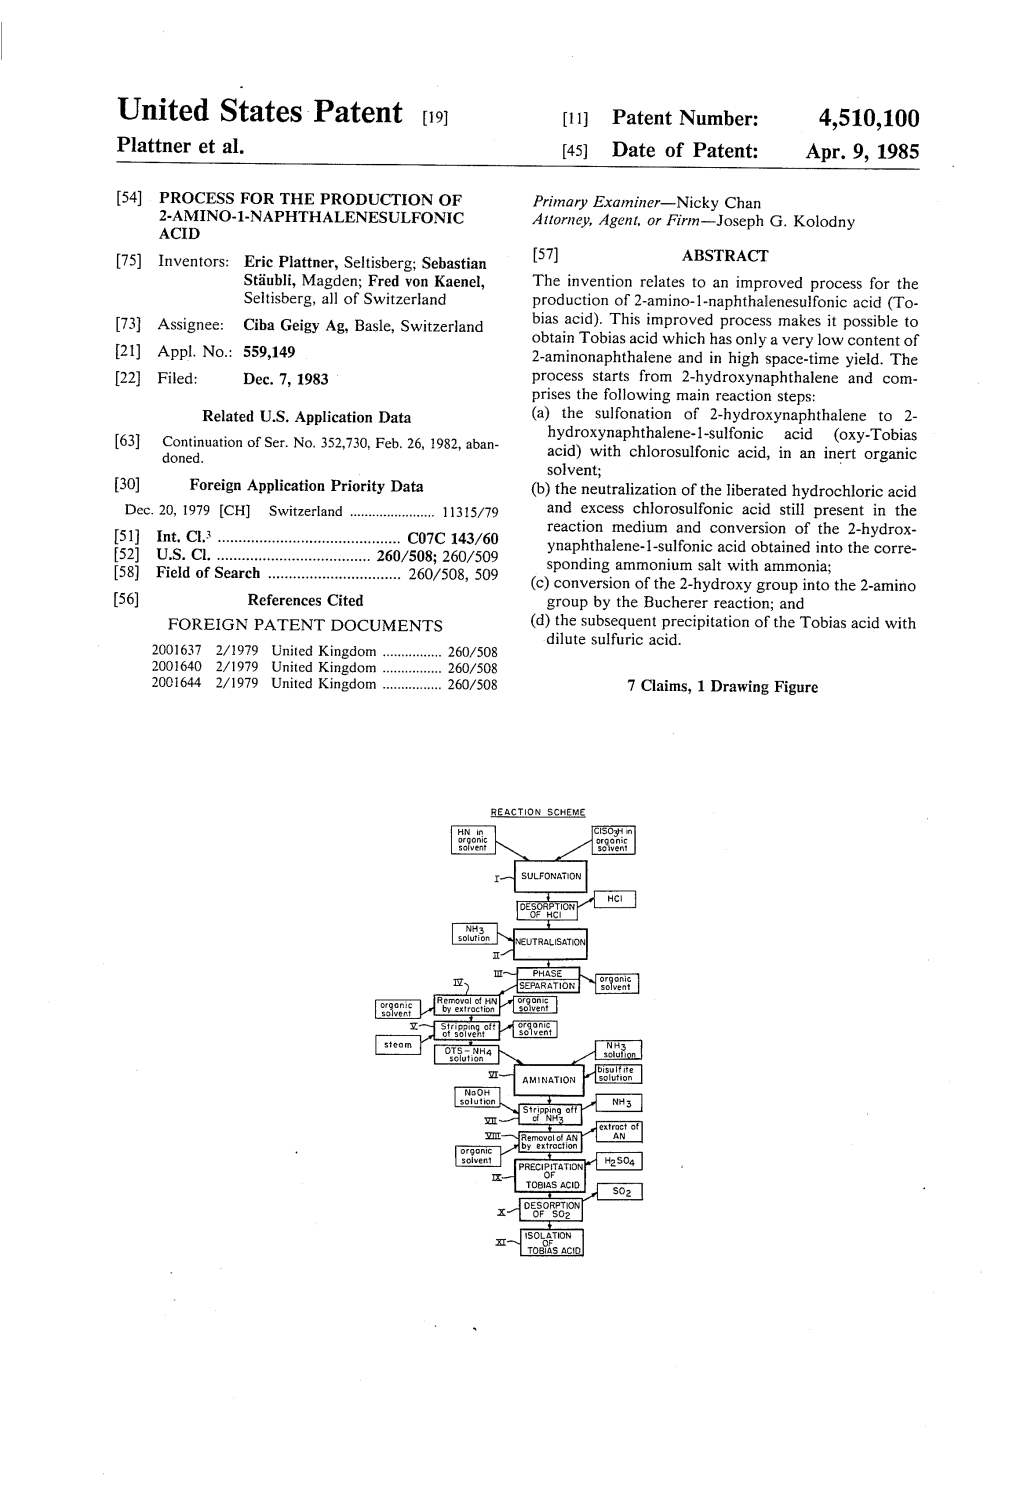 United States Patent to 11 Patent Number: 4,510,100 Plattner Et Al